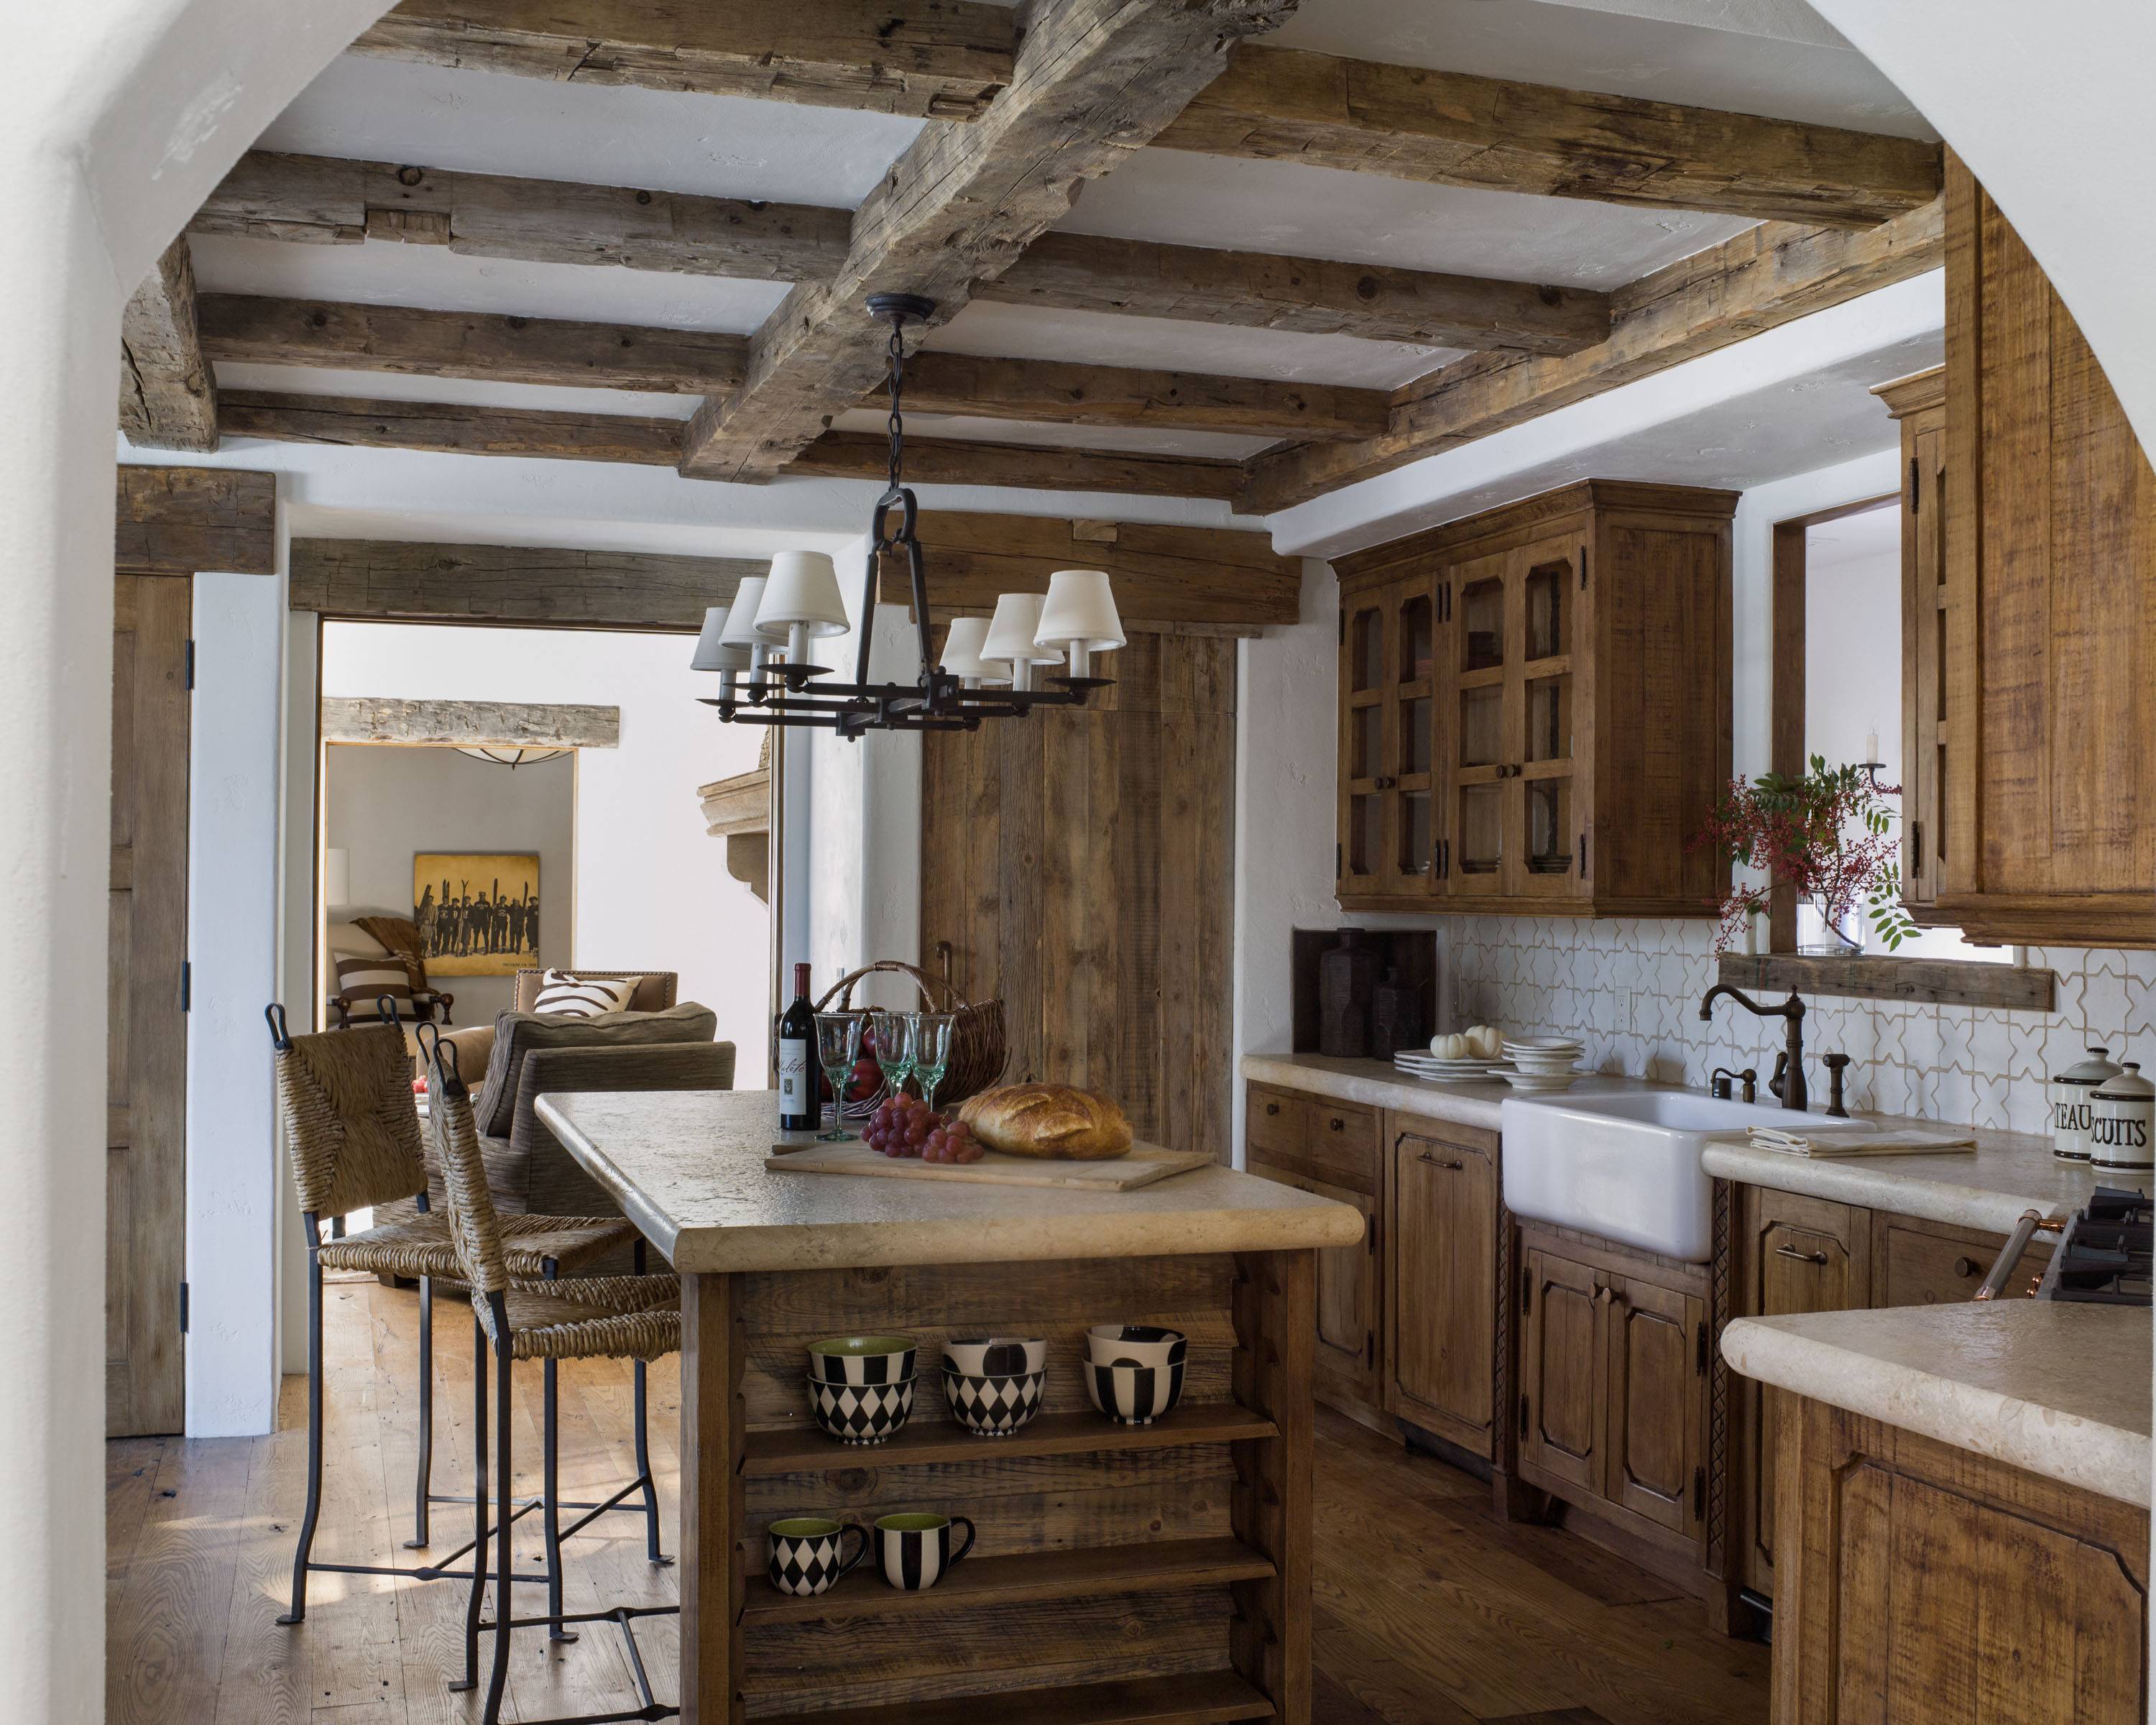 Кухня в стиле шале: 89 фото с идеями дизайна кухонного интерьера